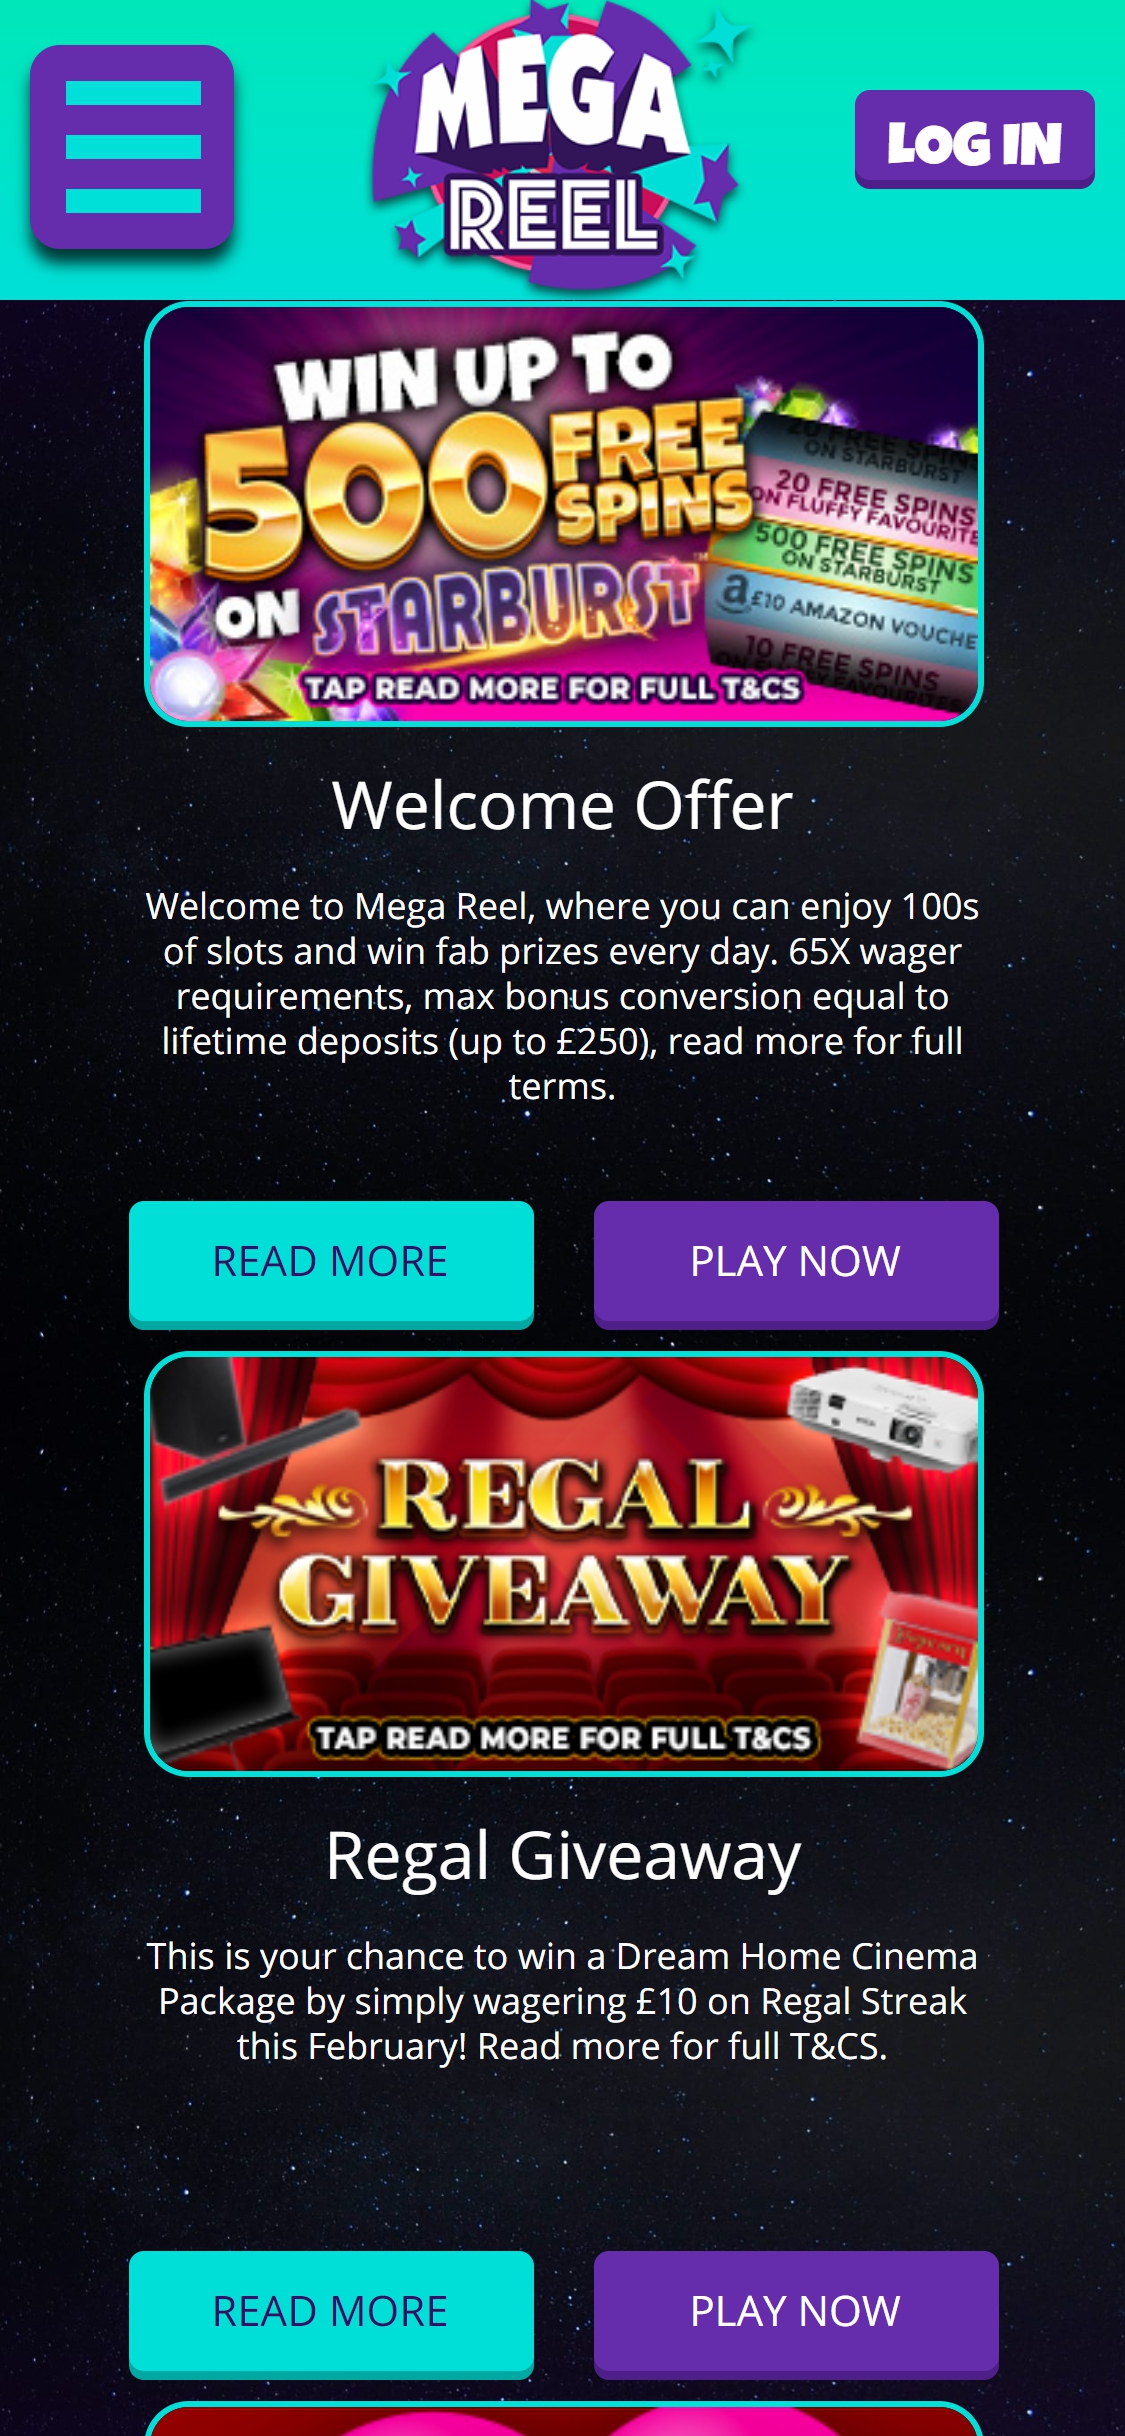 Mega Reel Casino Mobile No Deposit Bonus Review